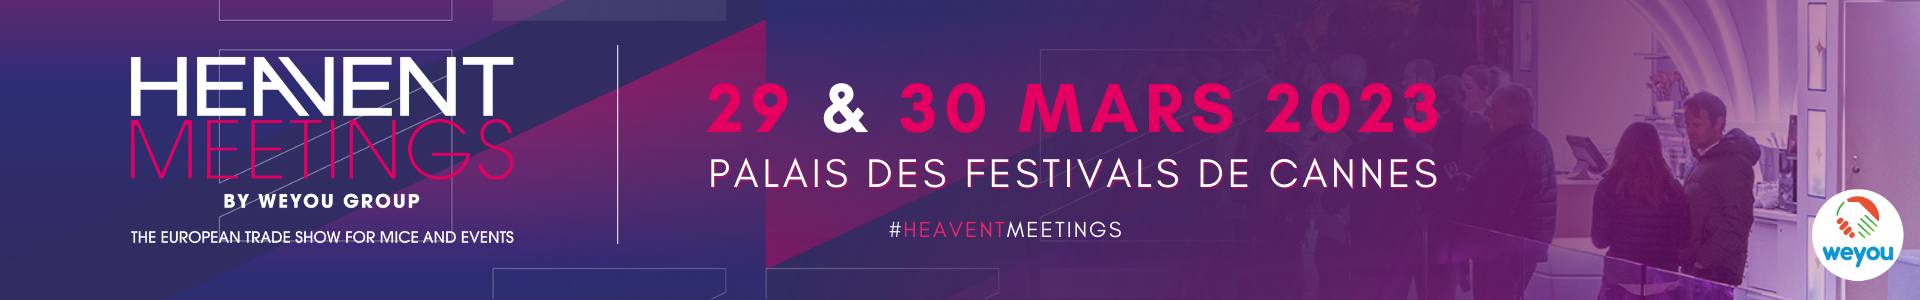 Heavent Meetings - 2023 03 28/29/30 - Cannes